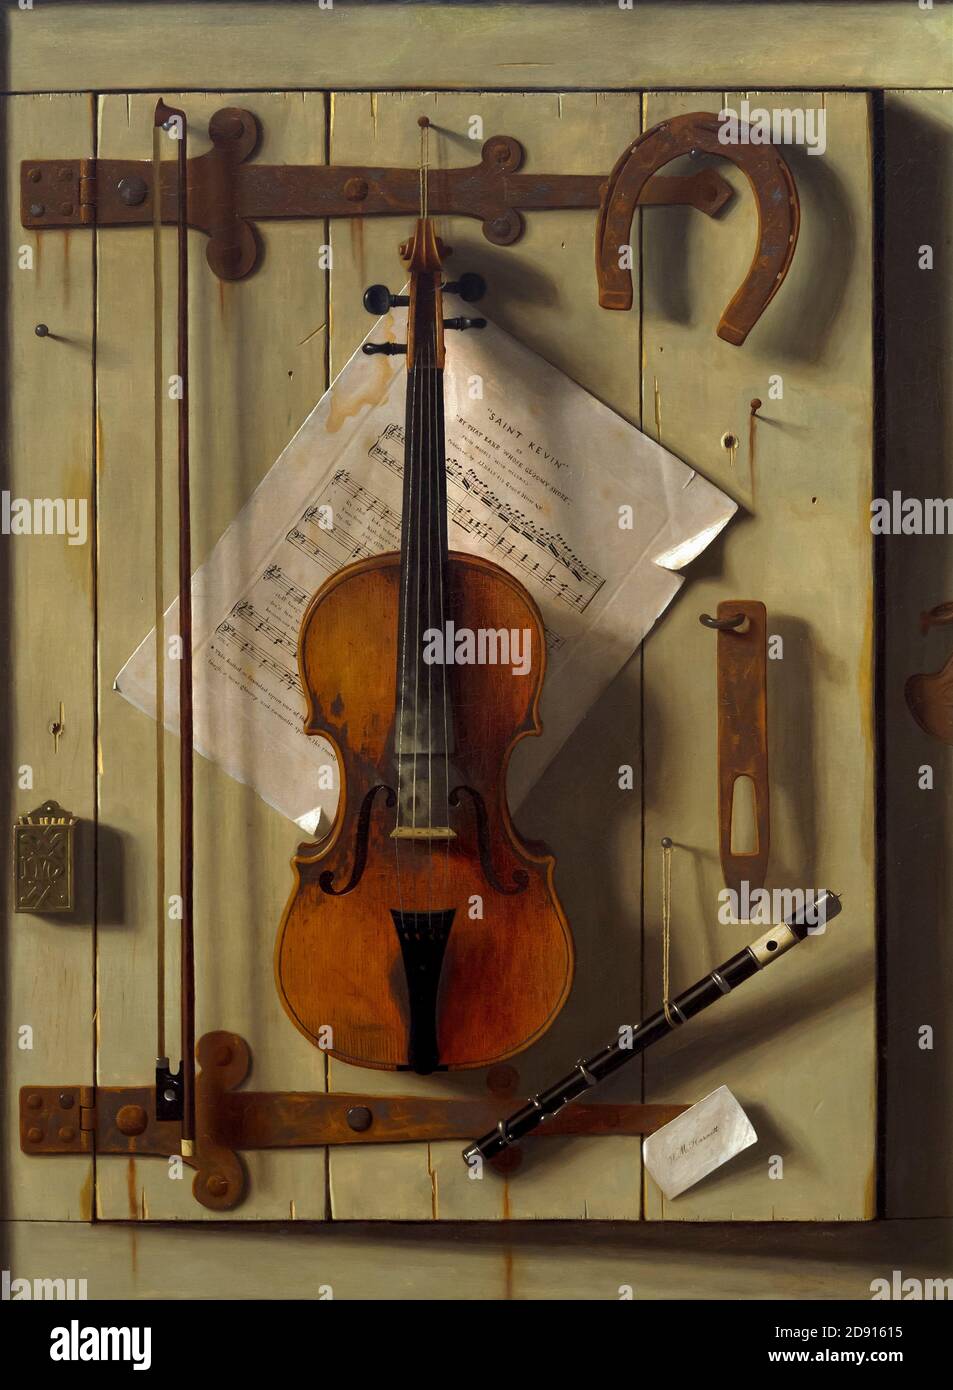 La vie toujours le violon et de la musique, William Michael Harnett, 1888, Metropolitan Museum of Art, Manhattan, New York City, USA, Amérique du Nord Banque D'Images